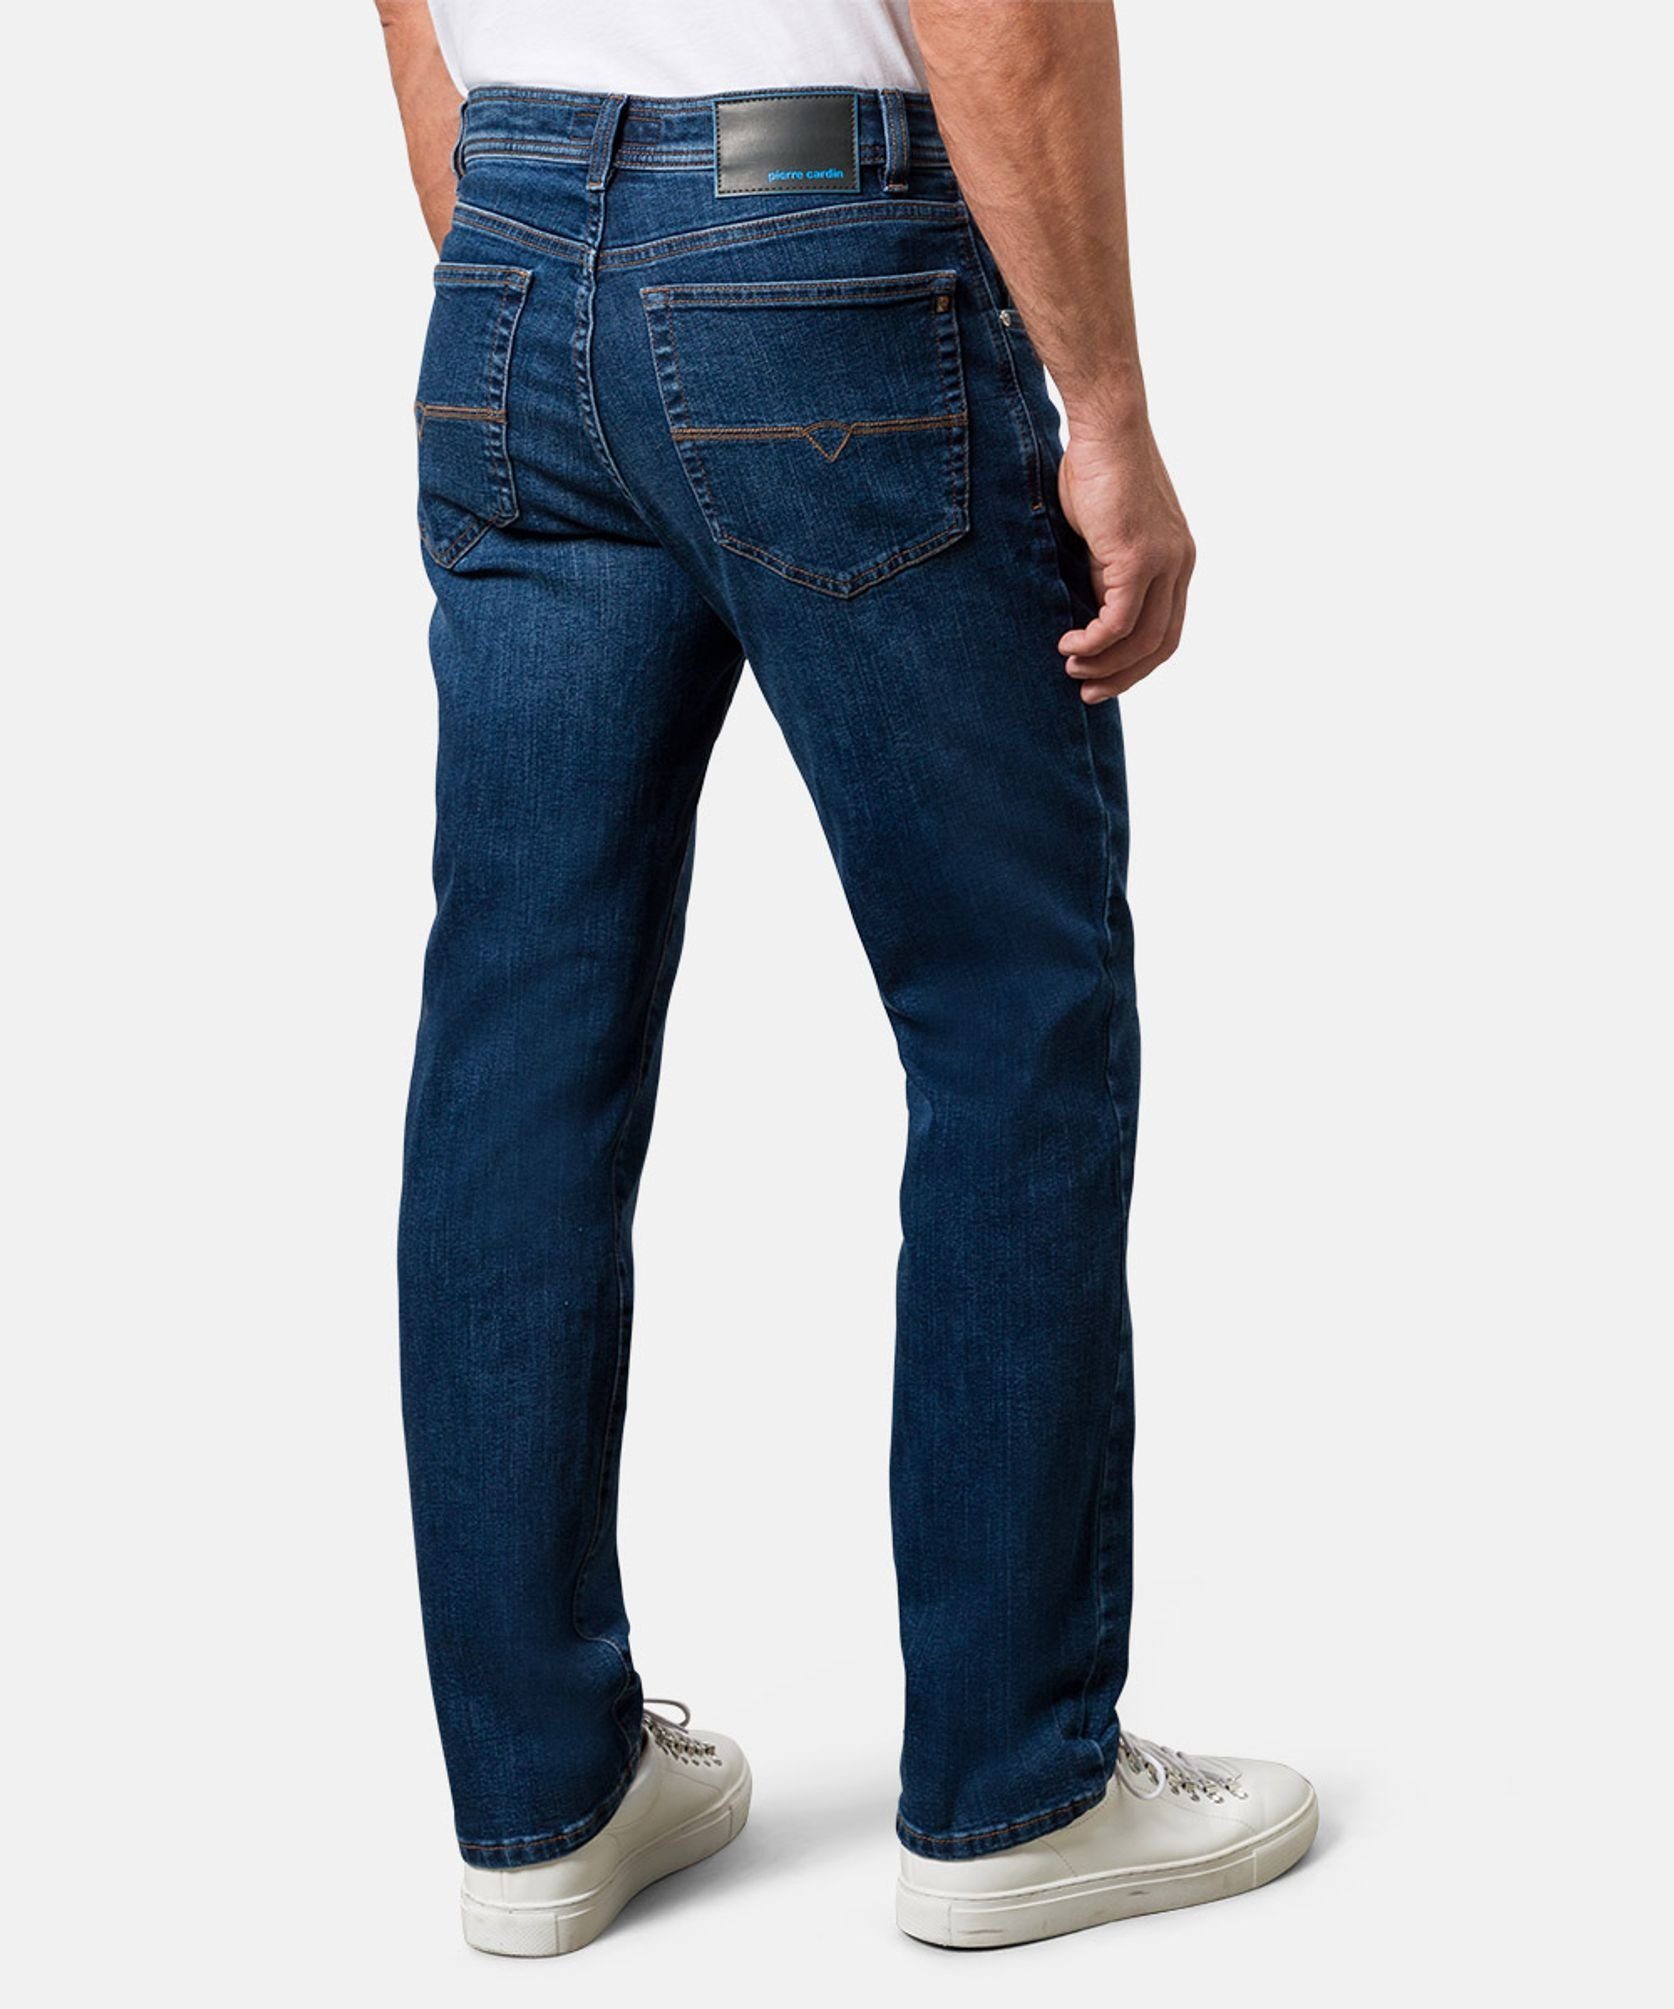 5-Pocket-Jeans 32310.7001 Cardin Pierre C7